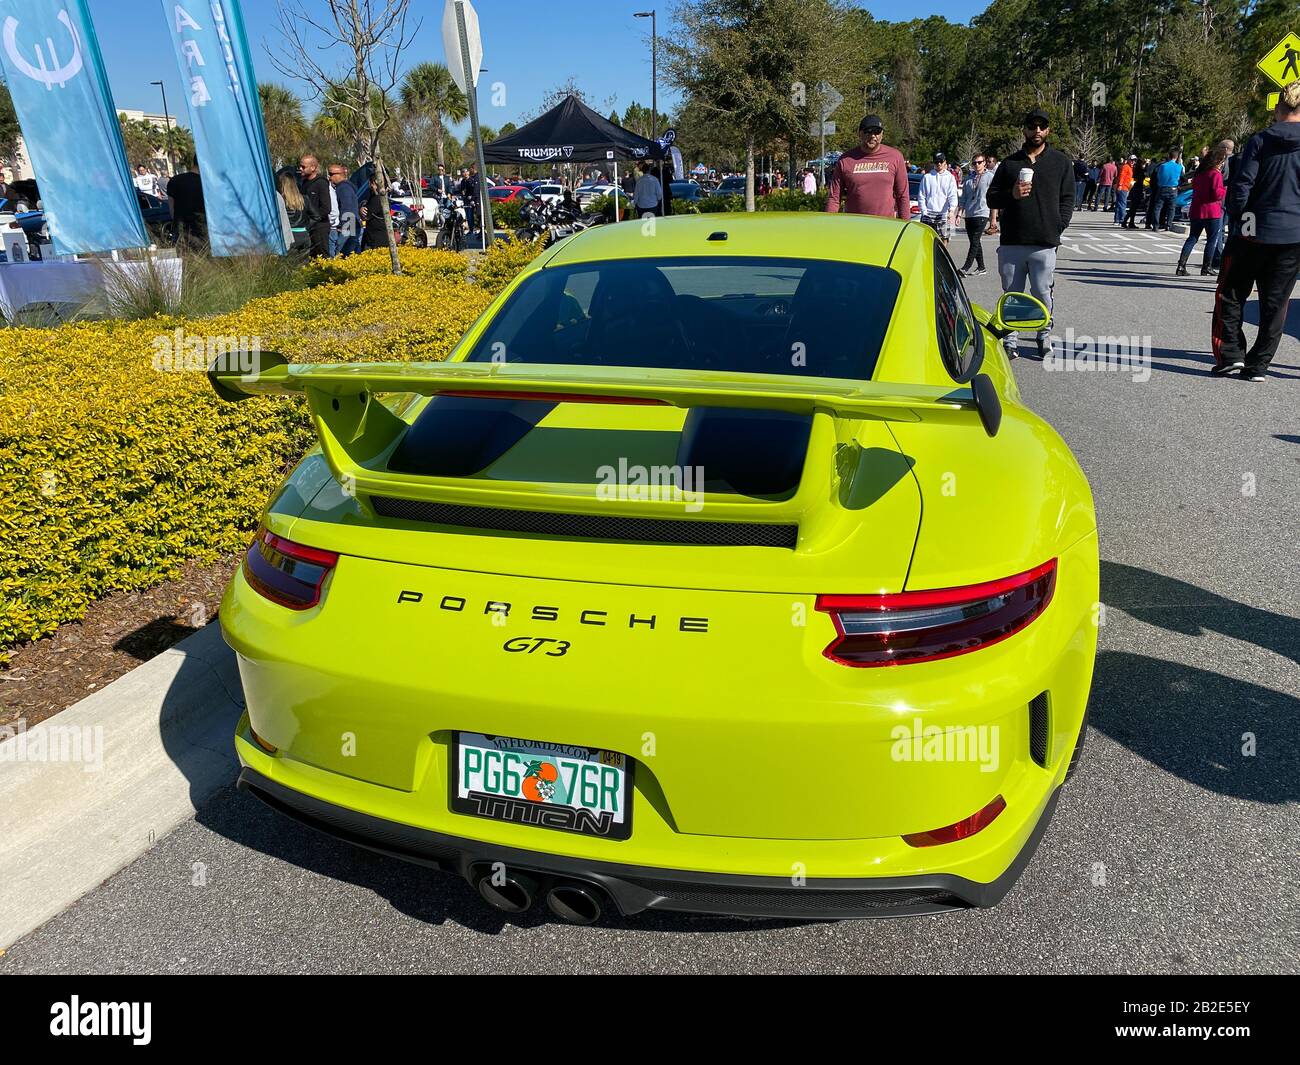 Orlando, FL/USA-3/1/20: La parte posteriore di una Porsche GT3 verde brillante ad un'esposizione di automobile libera in un parcheggio del negozio al dettaglio. Foto Stock